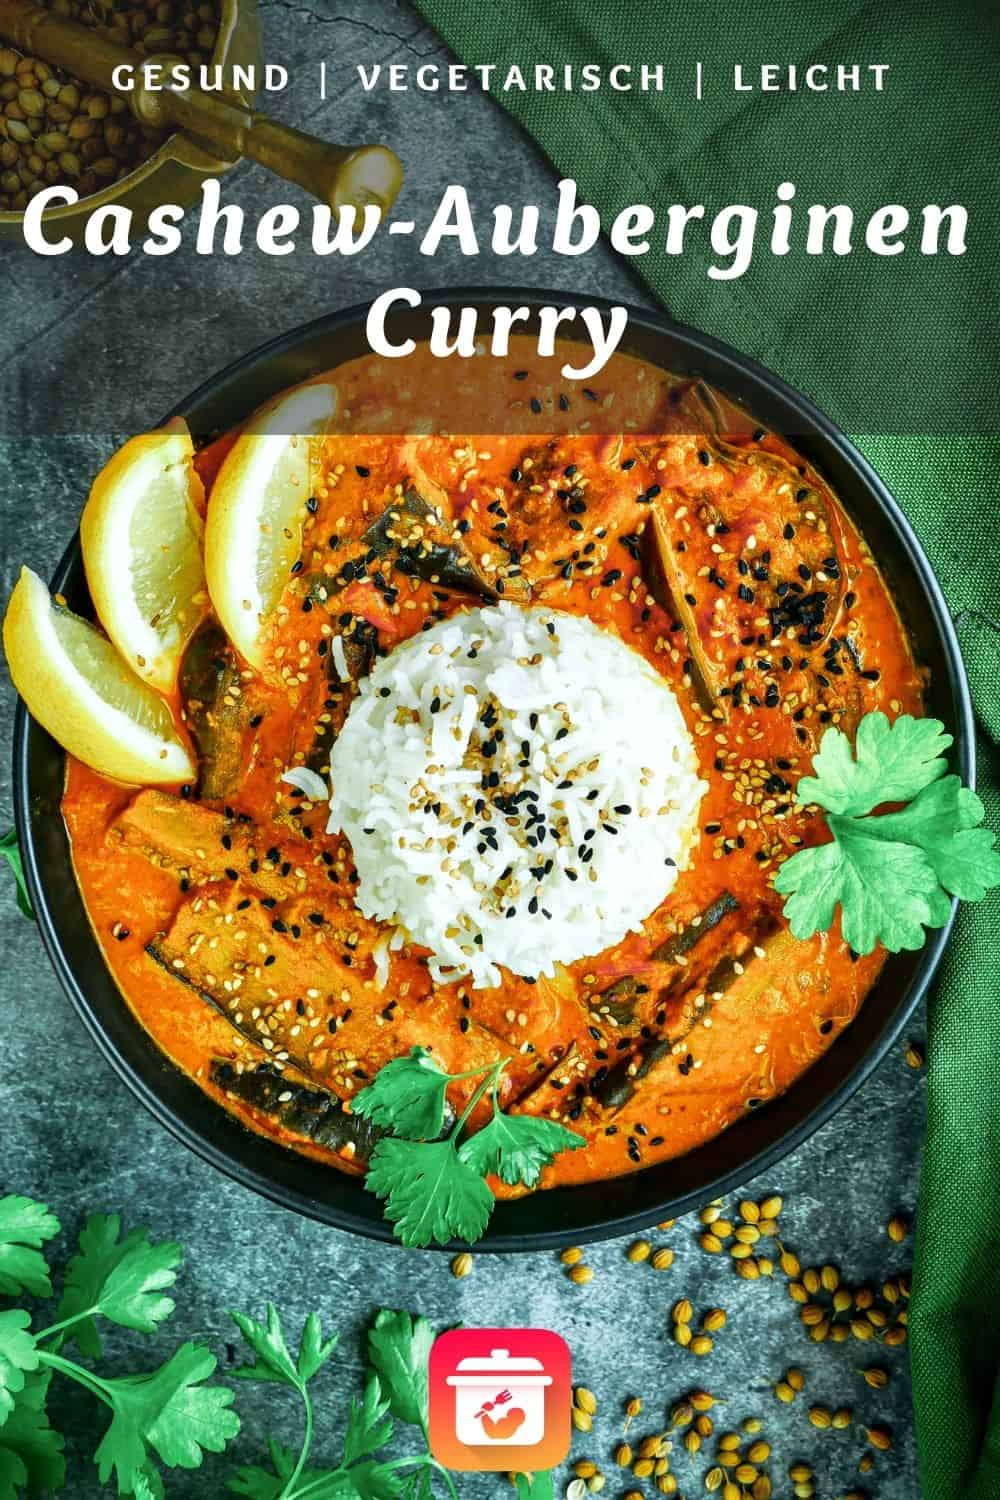 Cashew-Auberginen-Curry - Vegetarisches Curry mit Auberginen